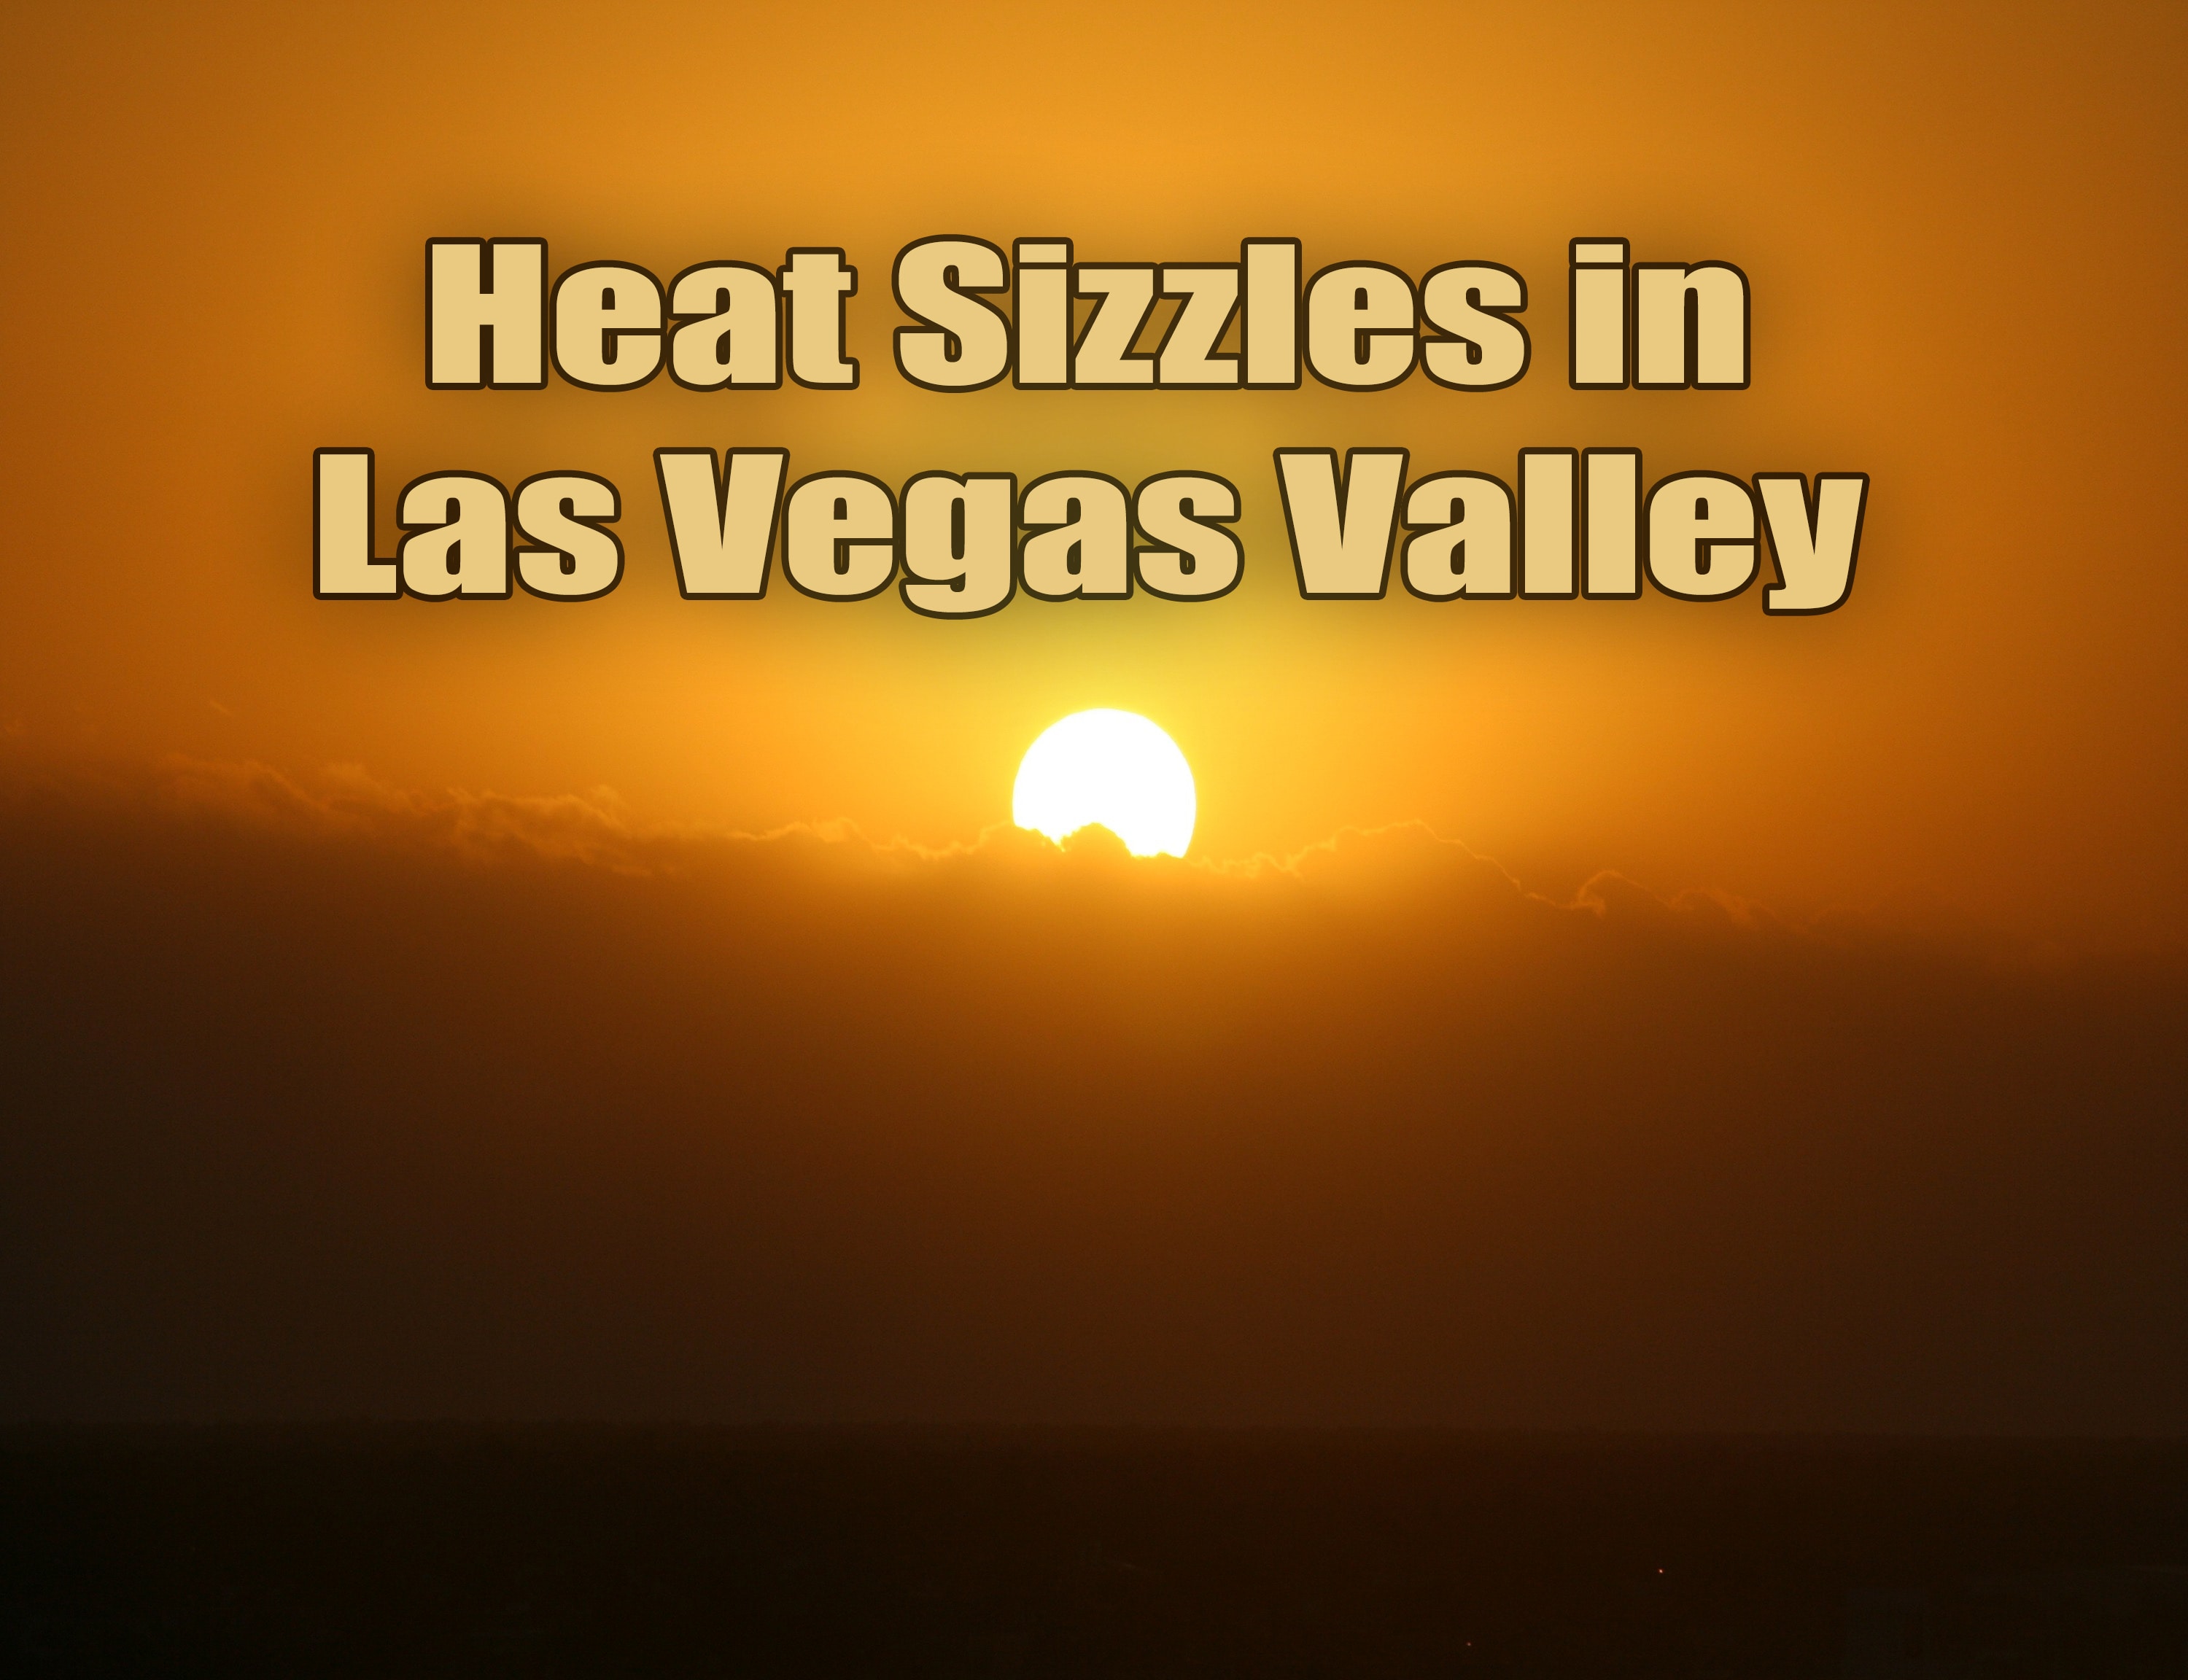 Heat Sizzles in Las Vegas Valley.jpg